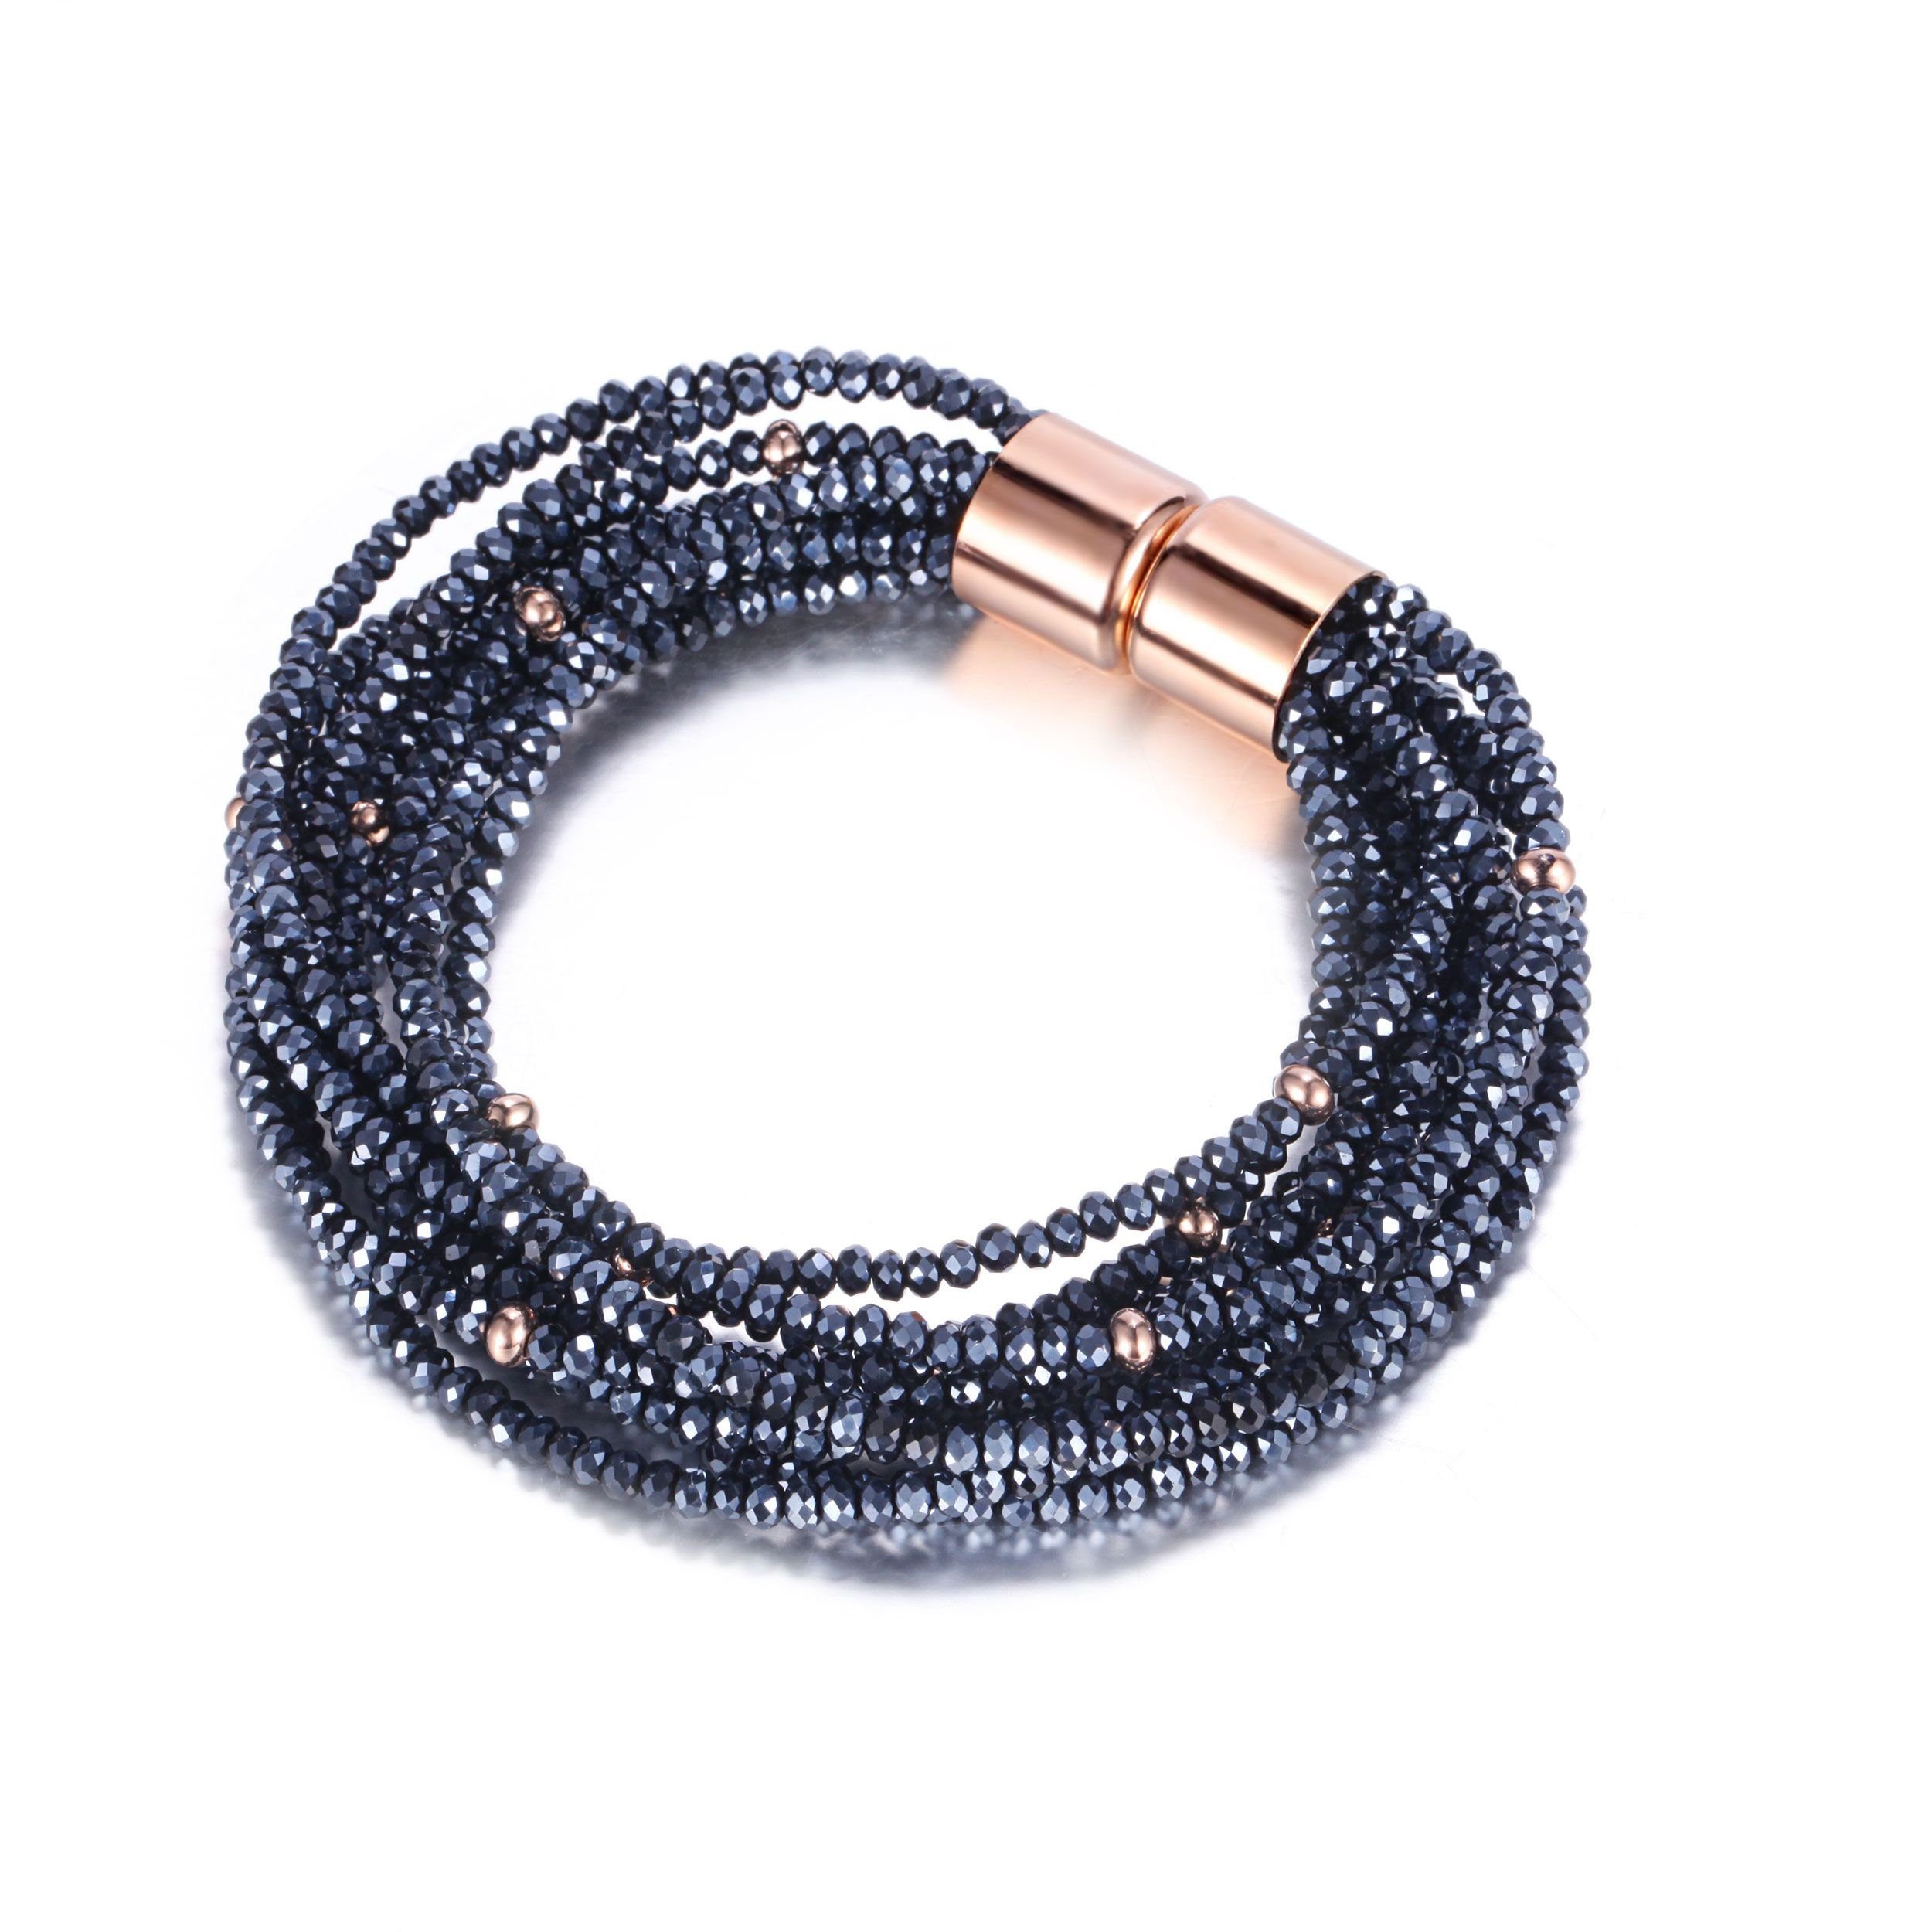 Kingka Armband Multistring Armband Stone Glamour mit Glasperlen \